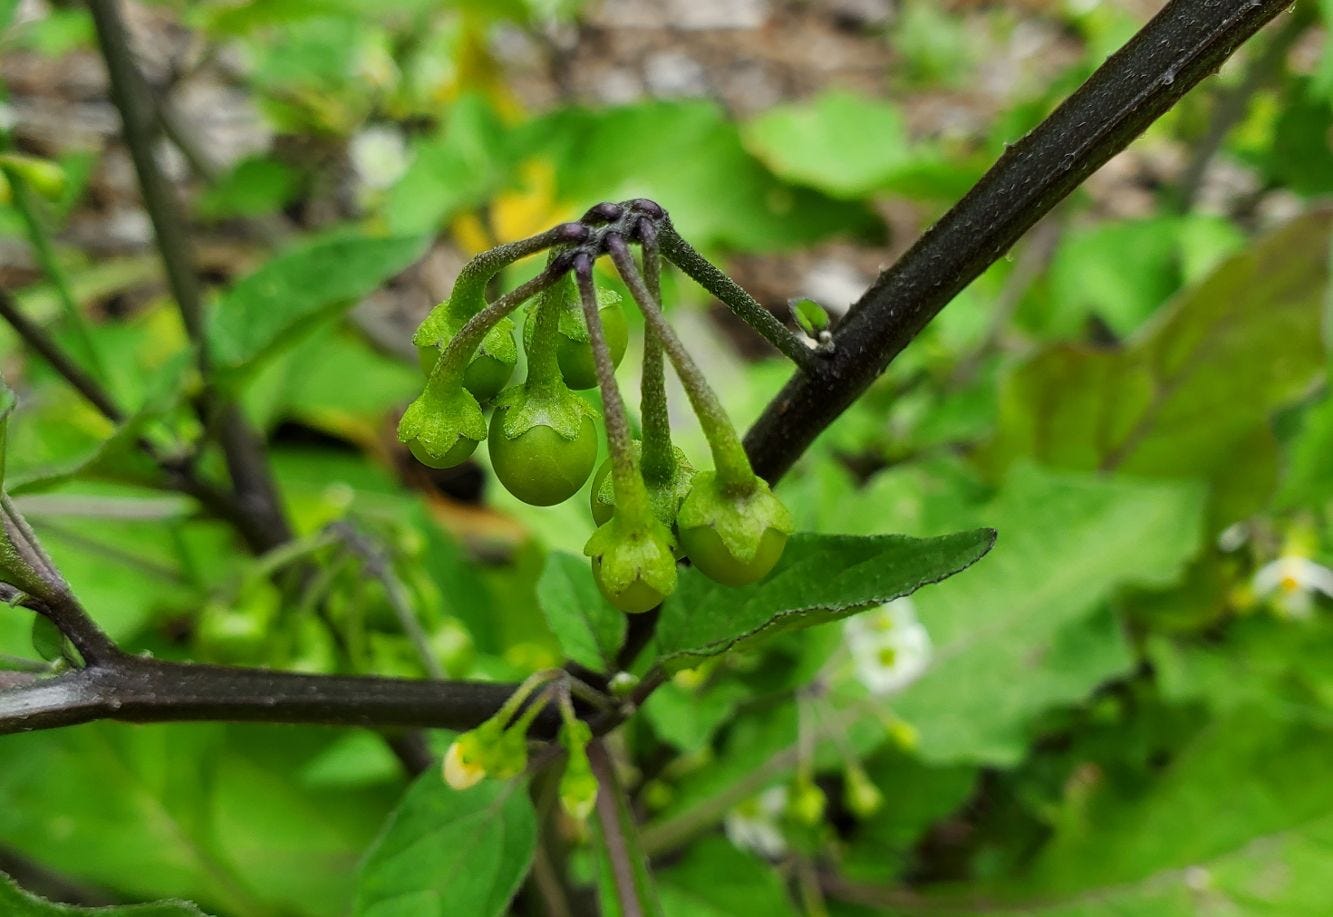 Solanum americanum [unripe fruit] 20221217_145218 sml.jpg